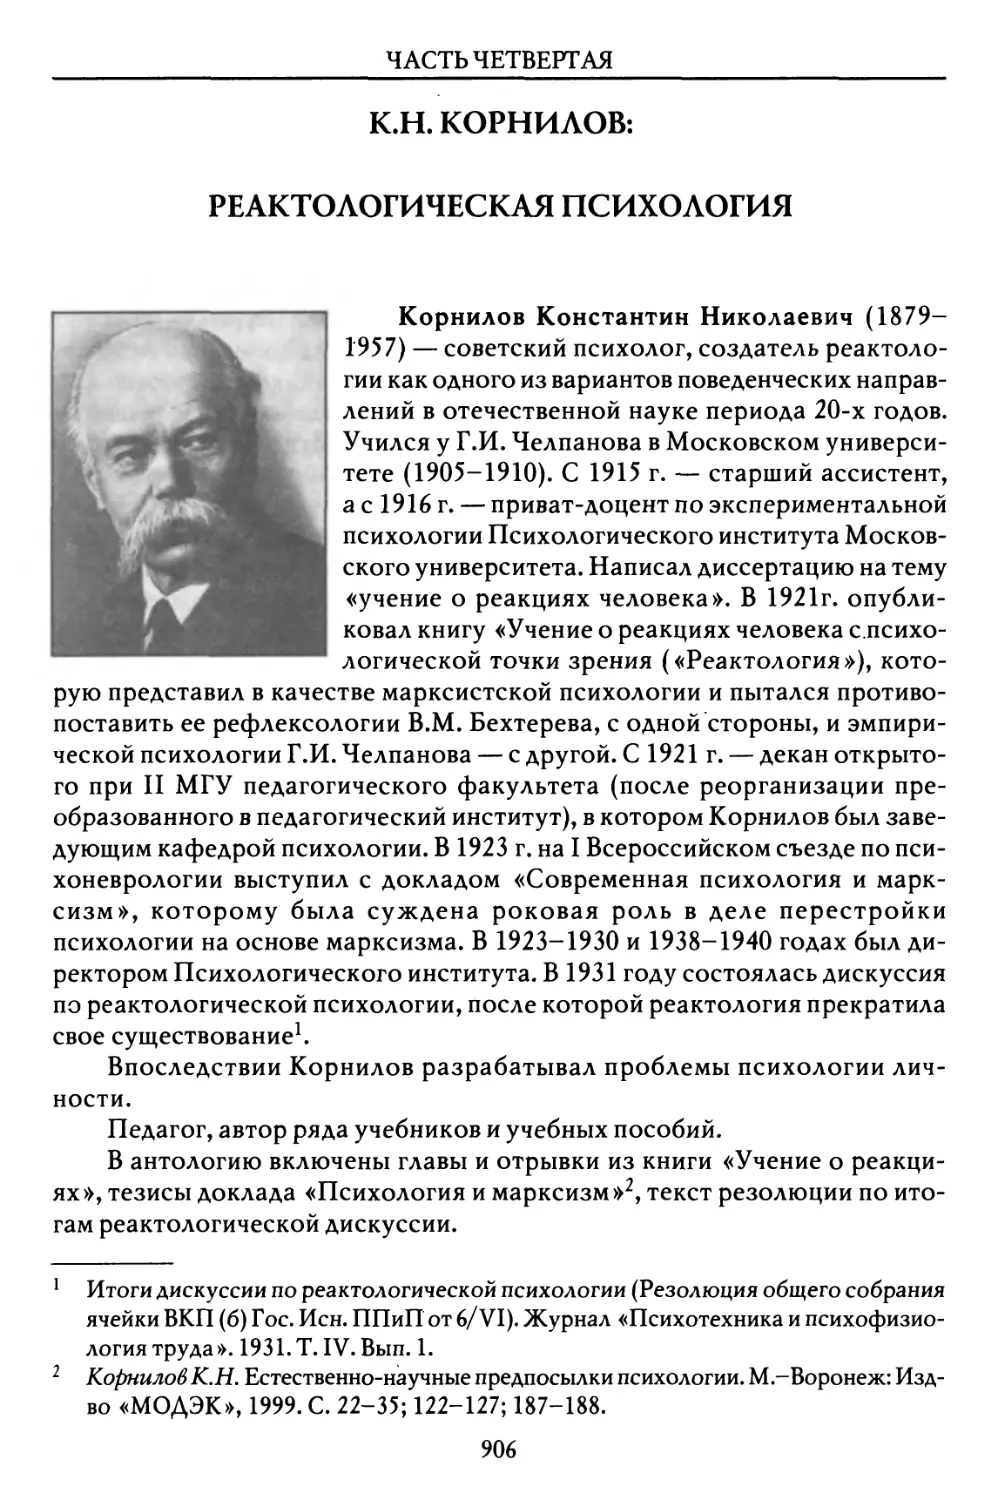 К.Н. Корнилов: Реактологическая ПСИХОЛОГИЯ